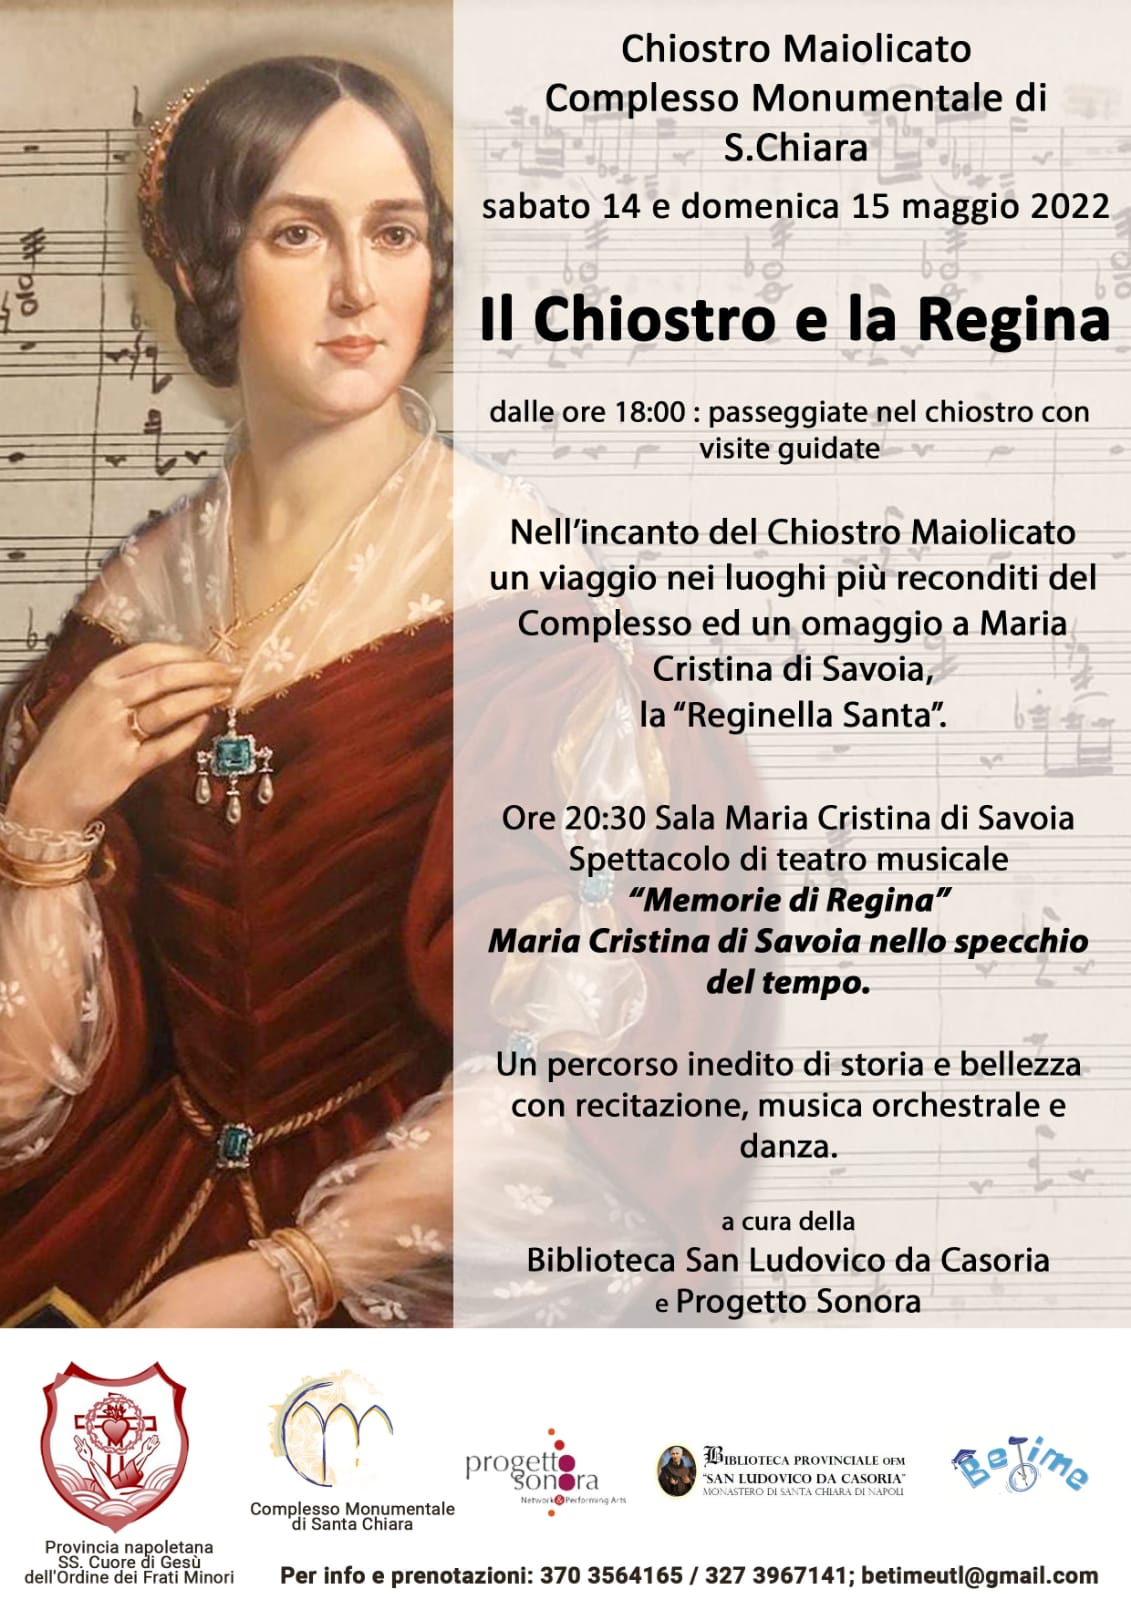 14-15 maggio: un weekend per Maria Cristina di Savoia, la "Reginella Santa"